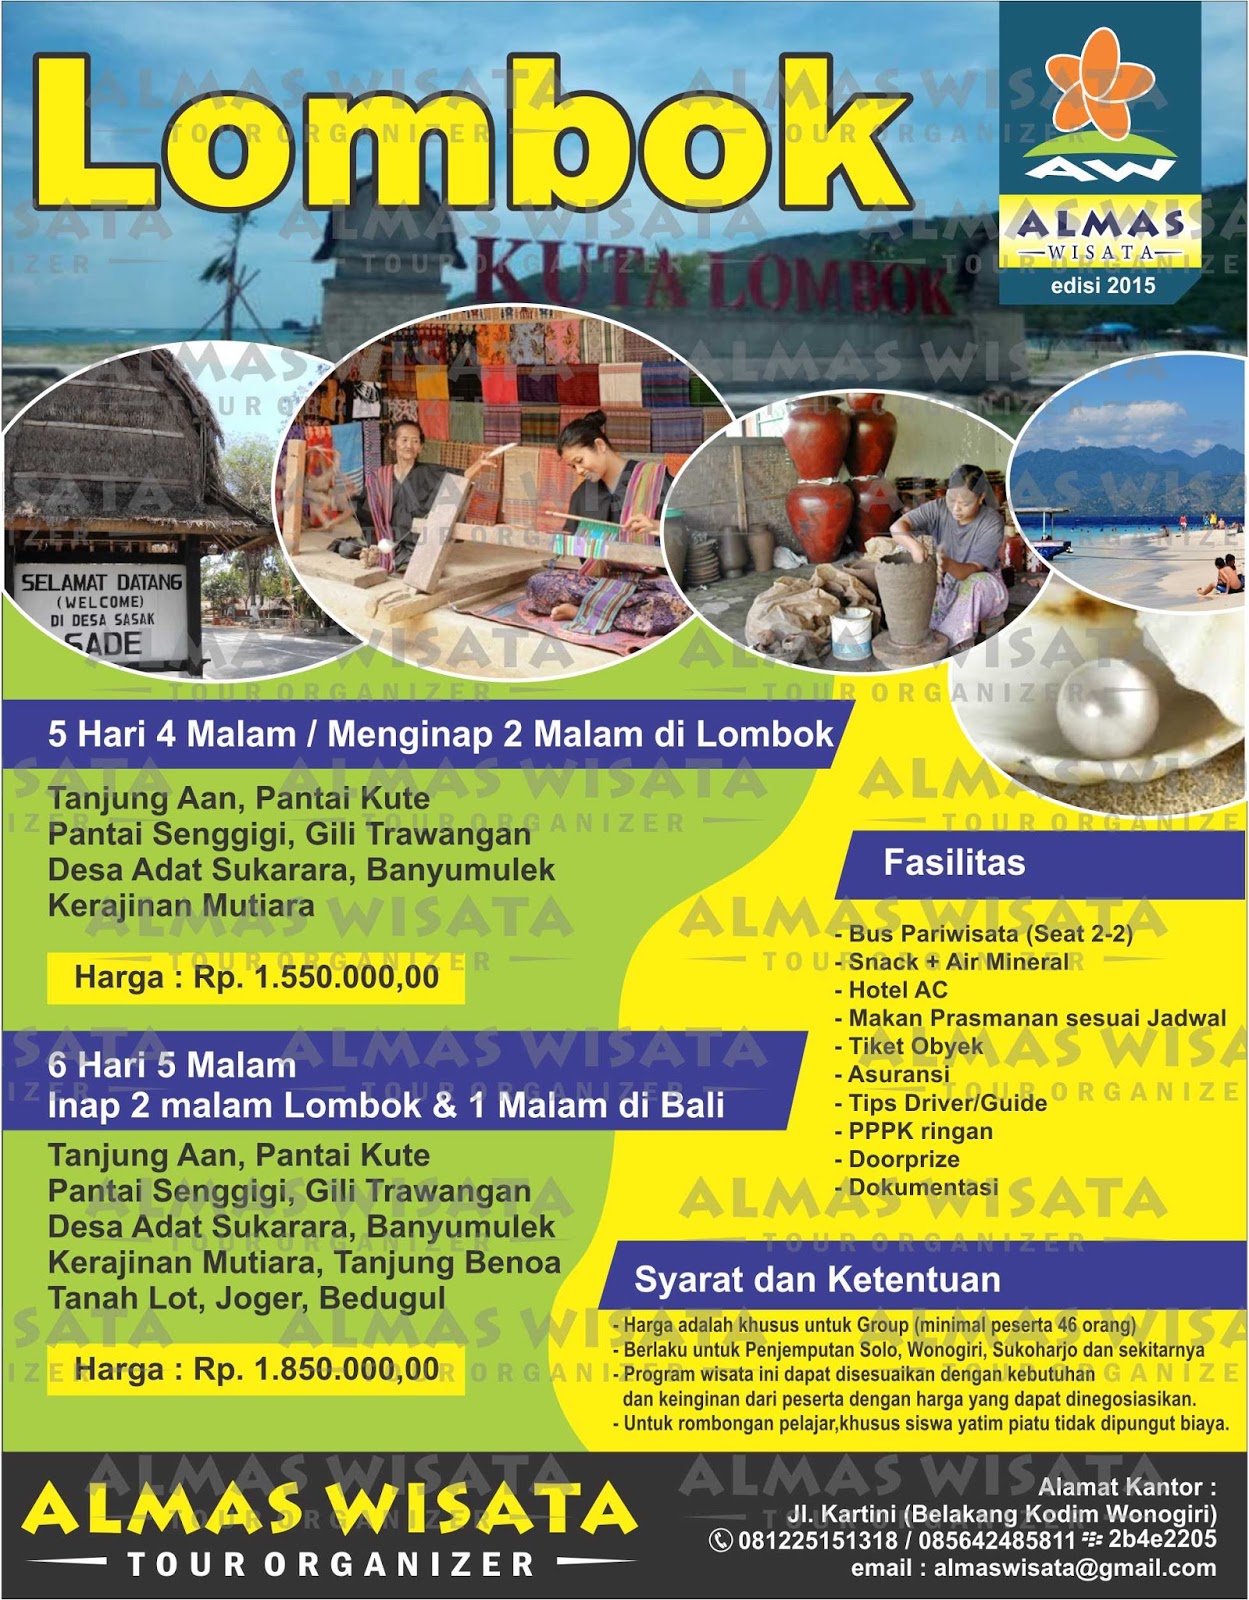 Contoh Brosur Wisata Lombok Terbaru